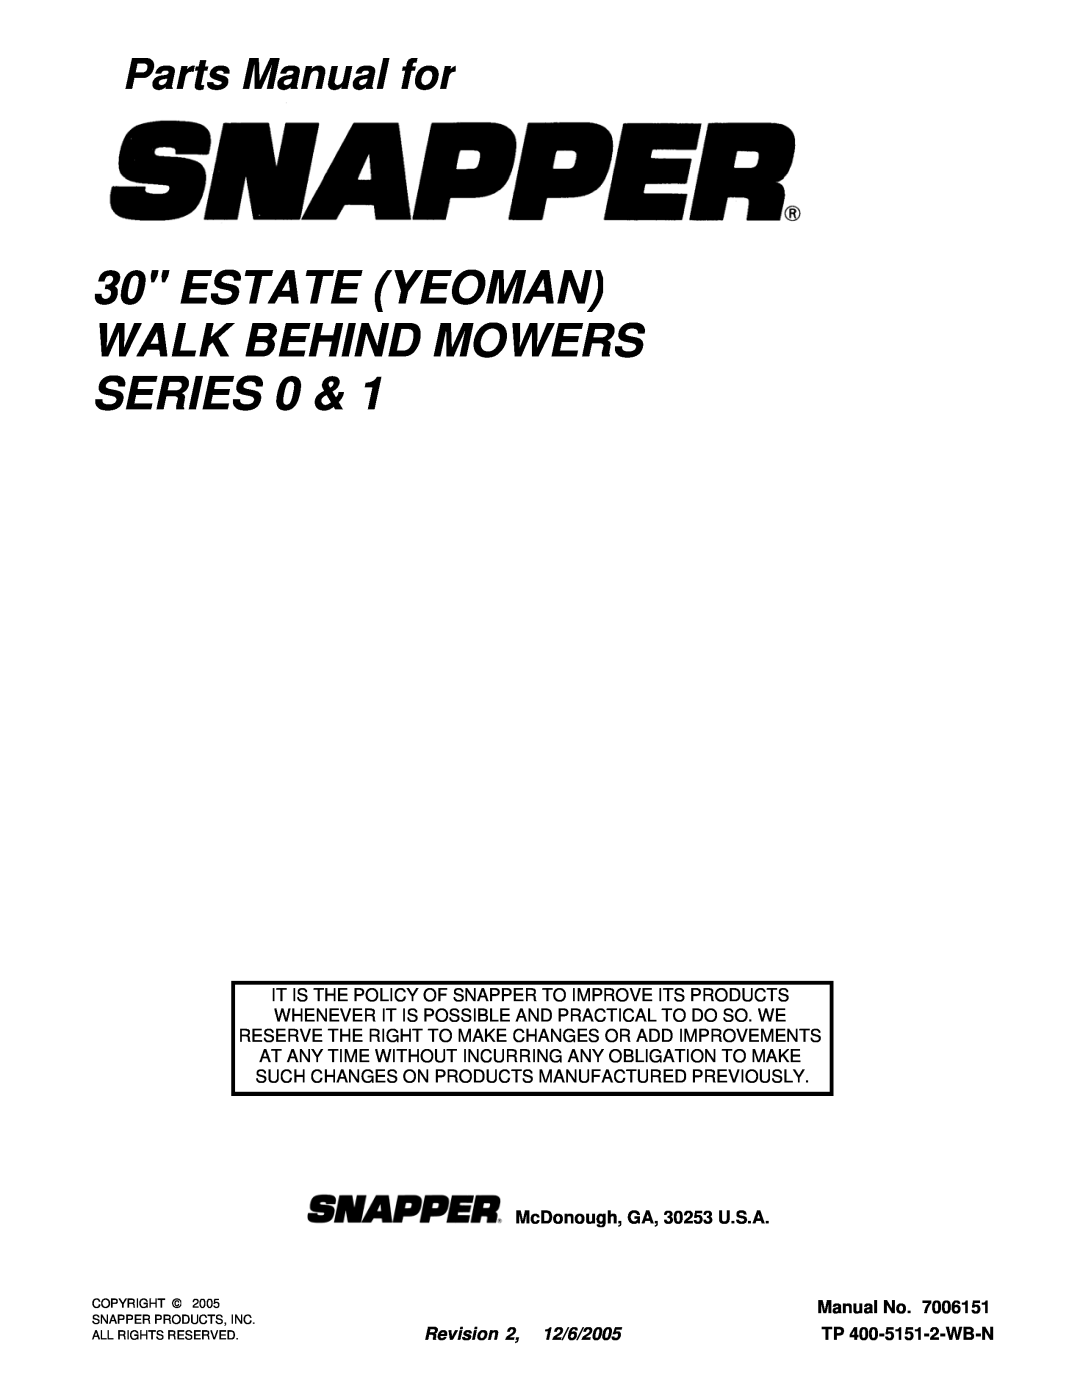 Snapper Y30080, Y30081B, Y30120B, Y30121B manual ESTATE YEOMAN WALK BEHIND MOWERS SERIES 0, Parts Manual for, Manual No 